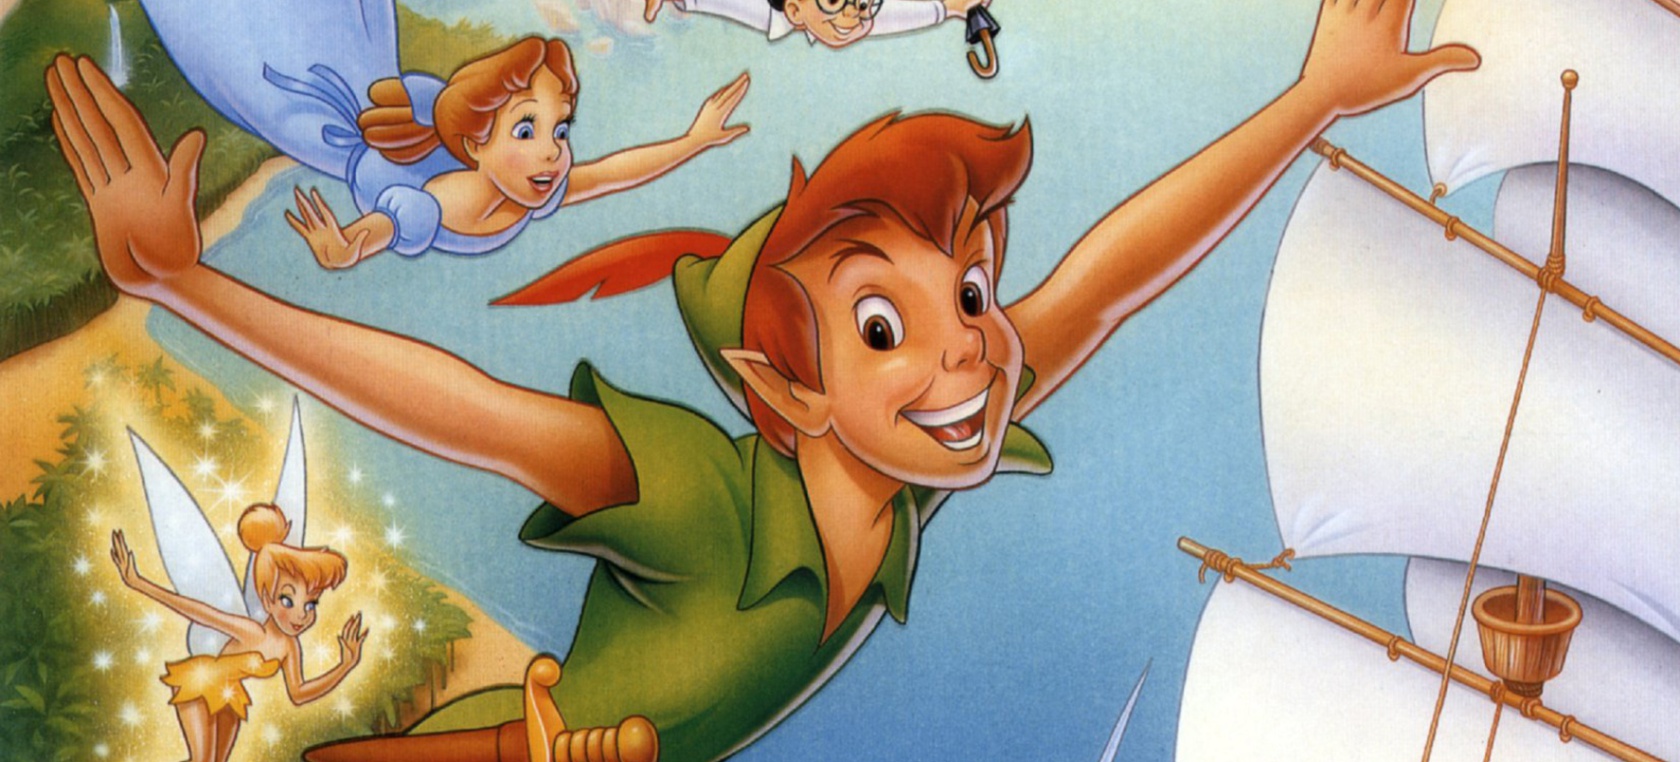 Yara Shahidi: El live-action de 'Peter Pan & Wendy' ya ha elegido a su Campanilla | Cine y Televisión | LOS40